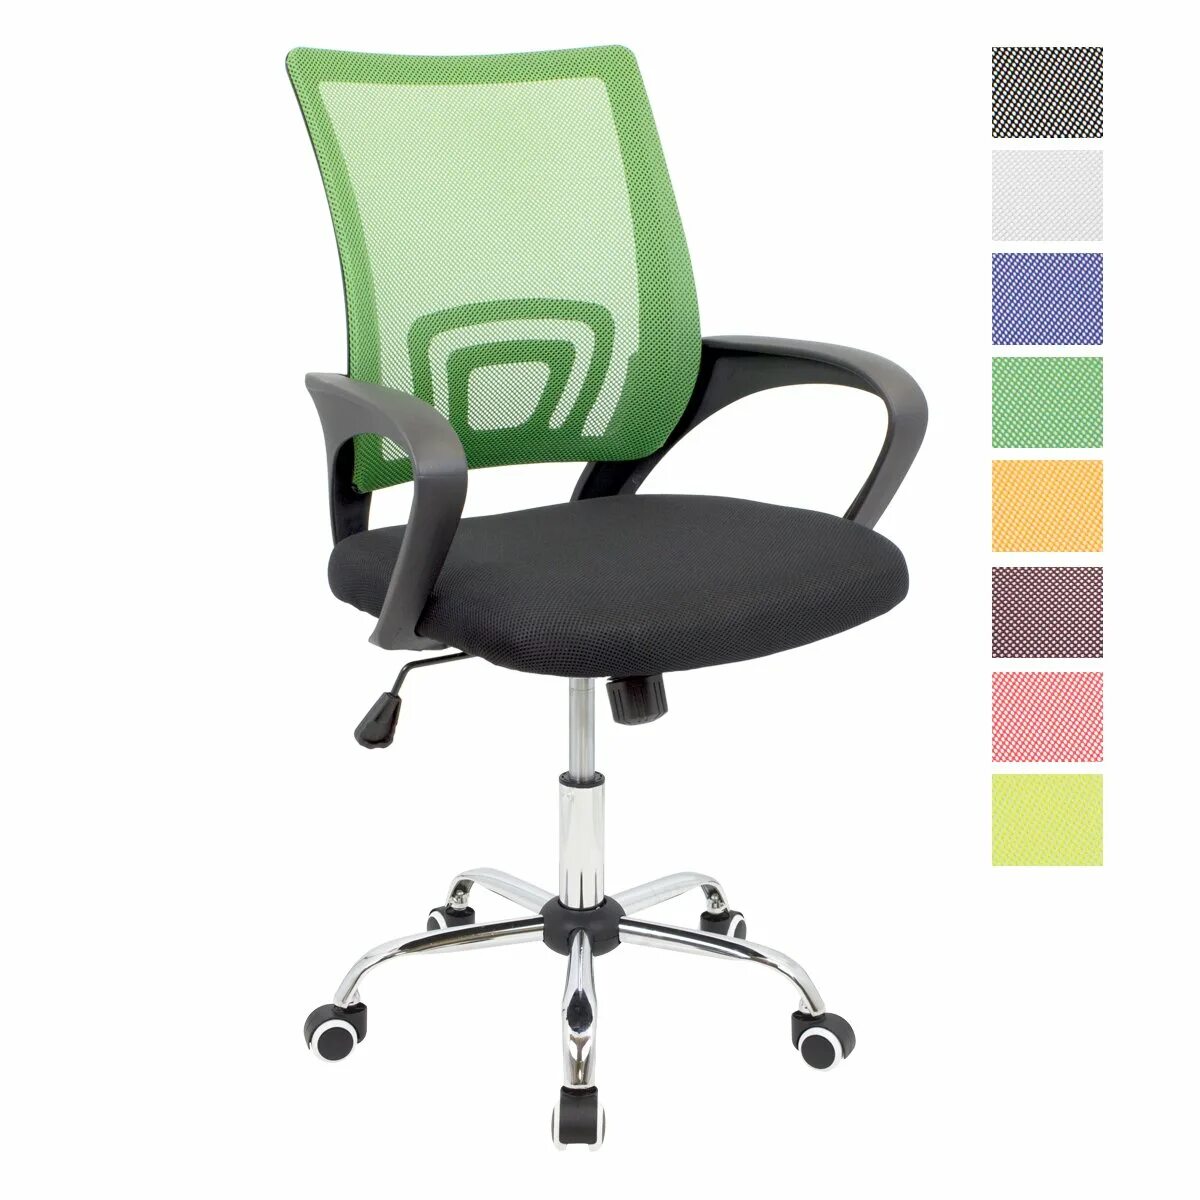 Офисное кресло Latina myk00318. Стул зеленый спинка компьютерный. Офисное кресло с зеленой спинкой. Кресло операторское.